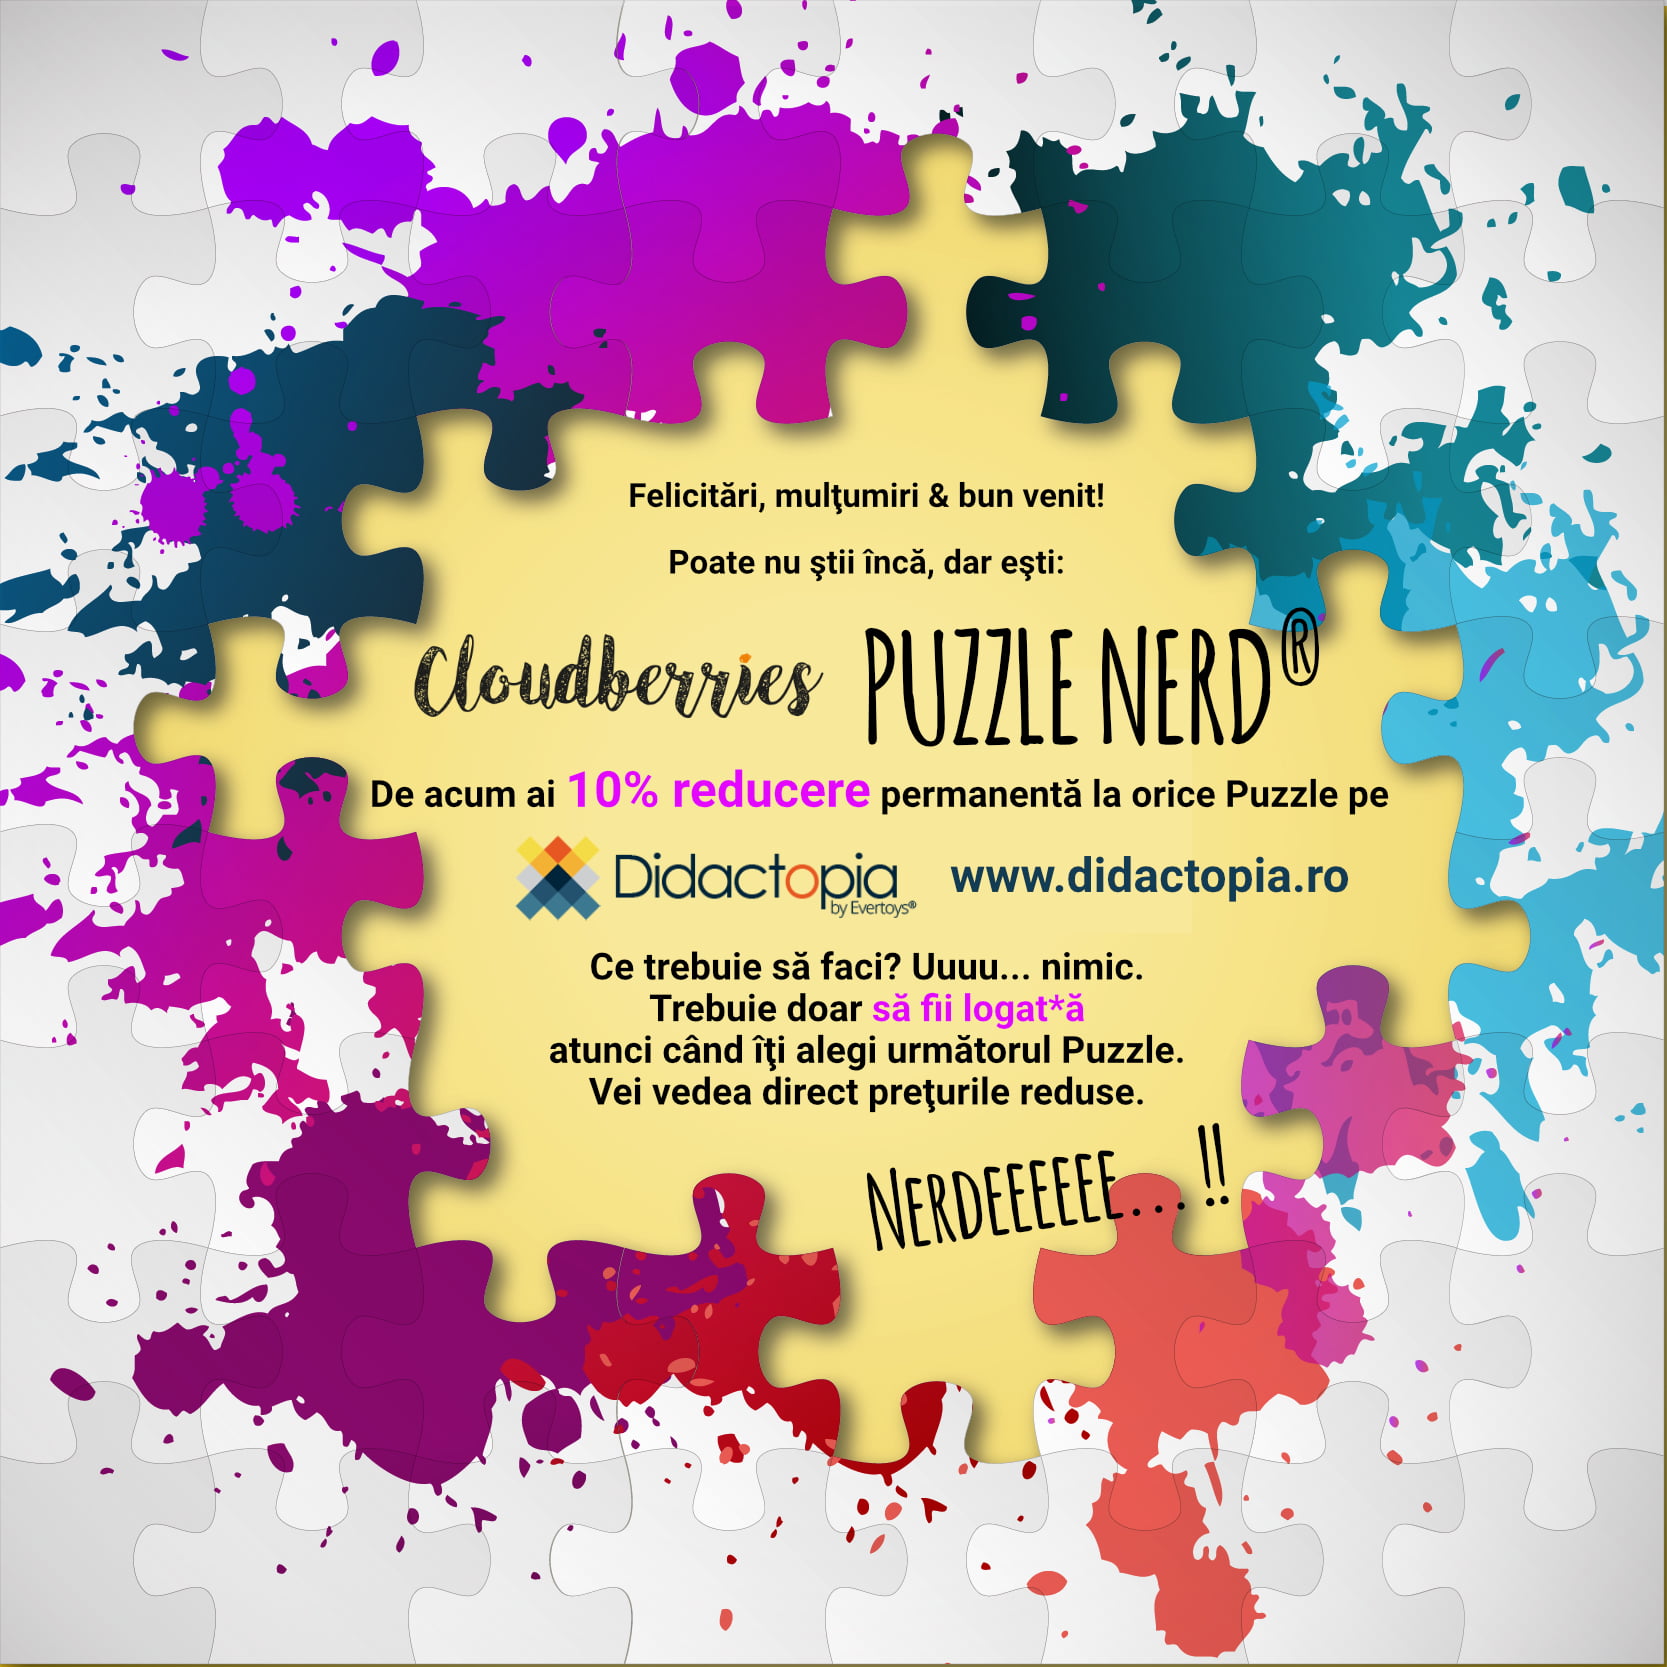 Cumpara orice puzzle Cloudberries si esti automat: Puzzle Nerd !